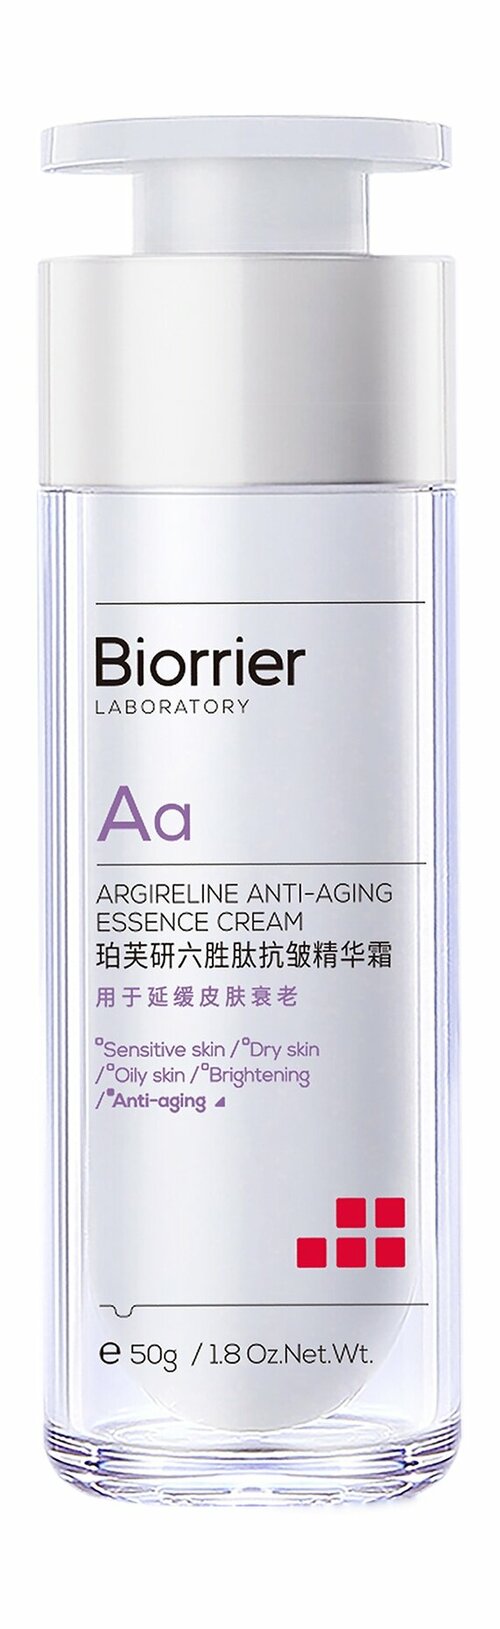 BIORRIER Anti-Aging Essence Cream Крем-эссенция для лица против морщин с аргирелином, 50 г